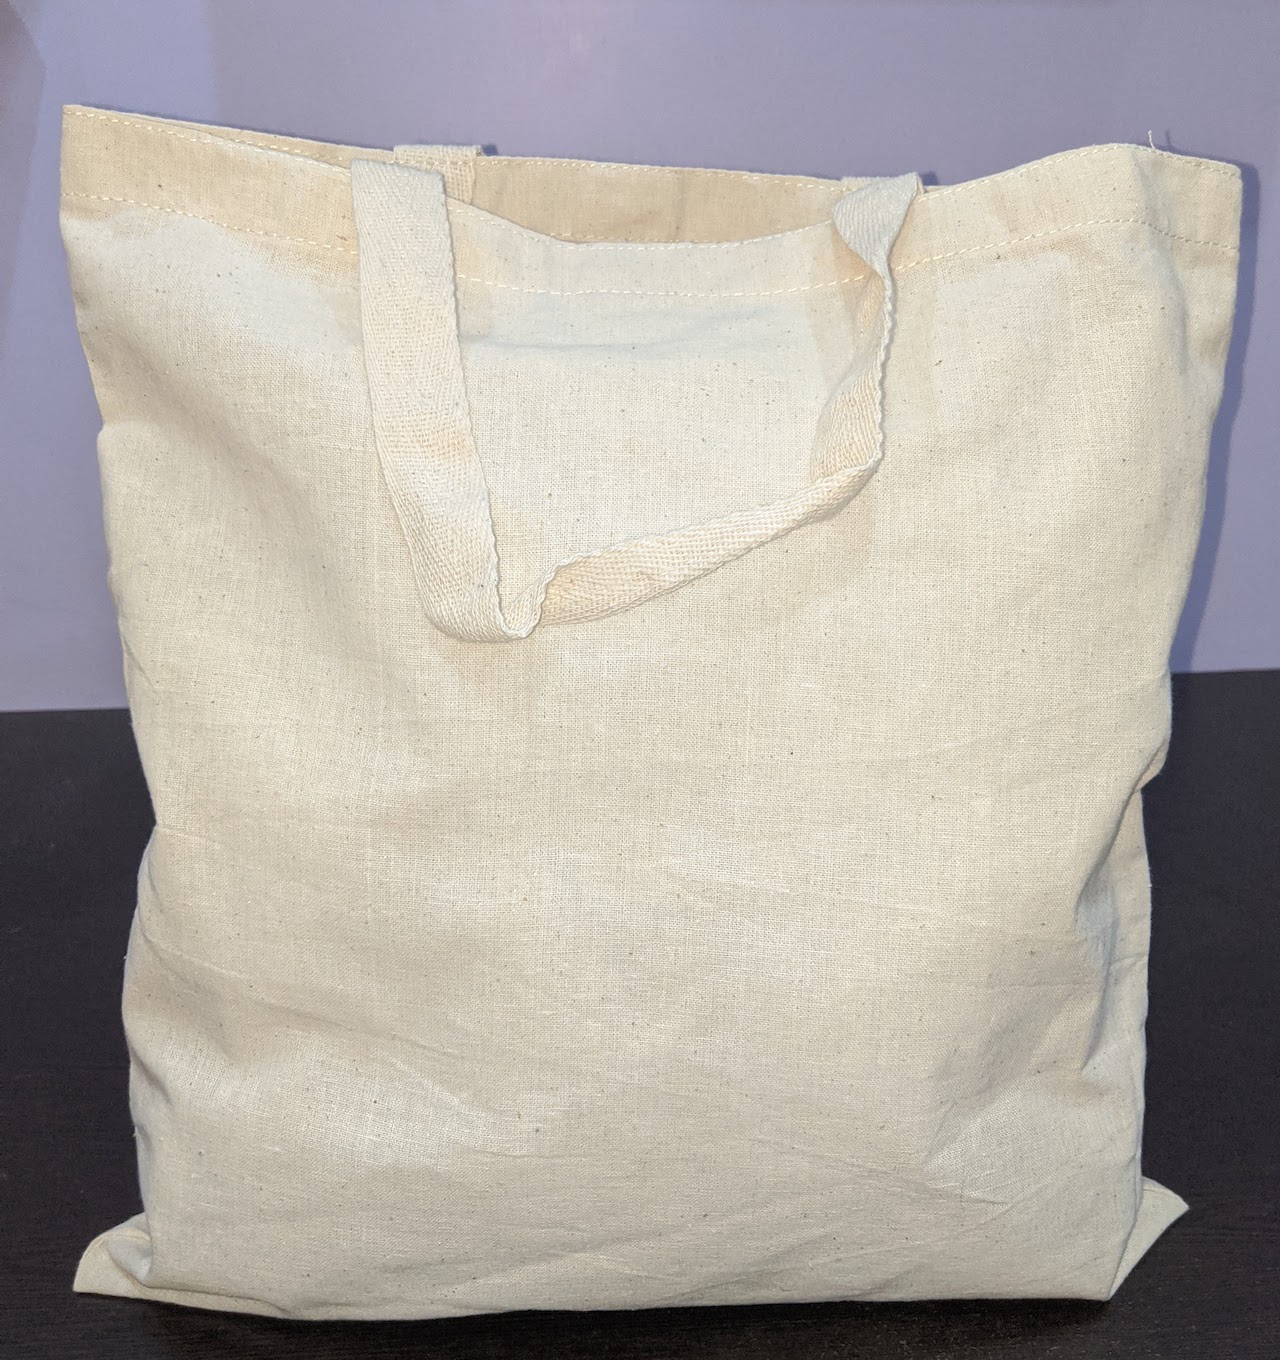 Cotton Bags Bulk Order - No Plastic Shop